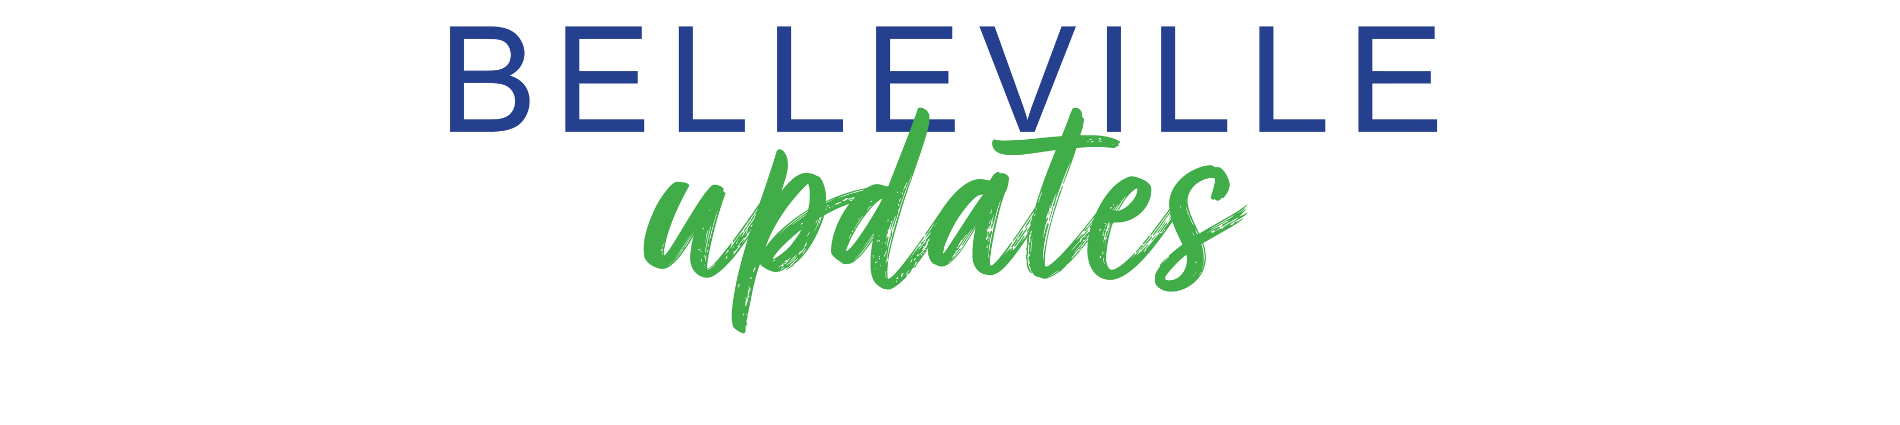 Logo for Belleville Updates Newsletter